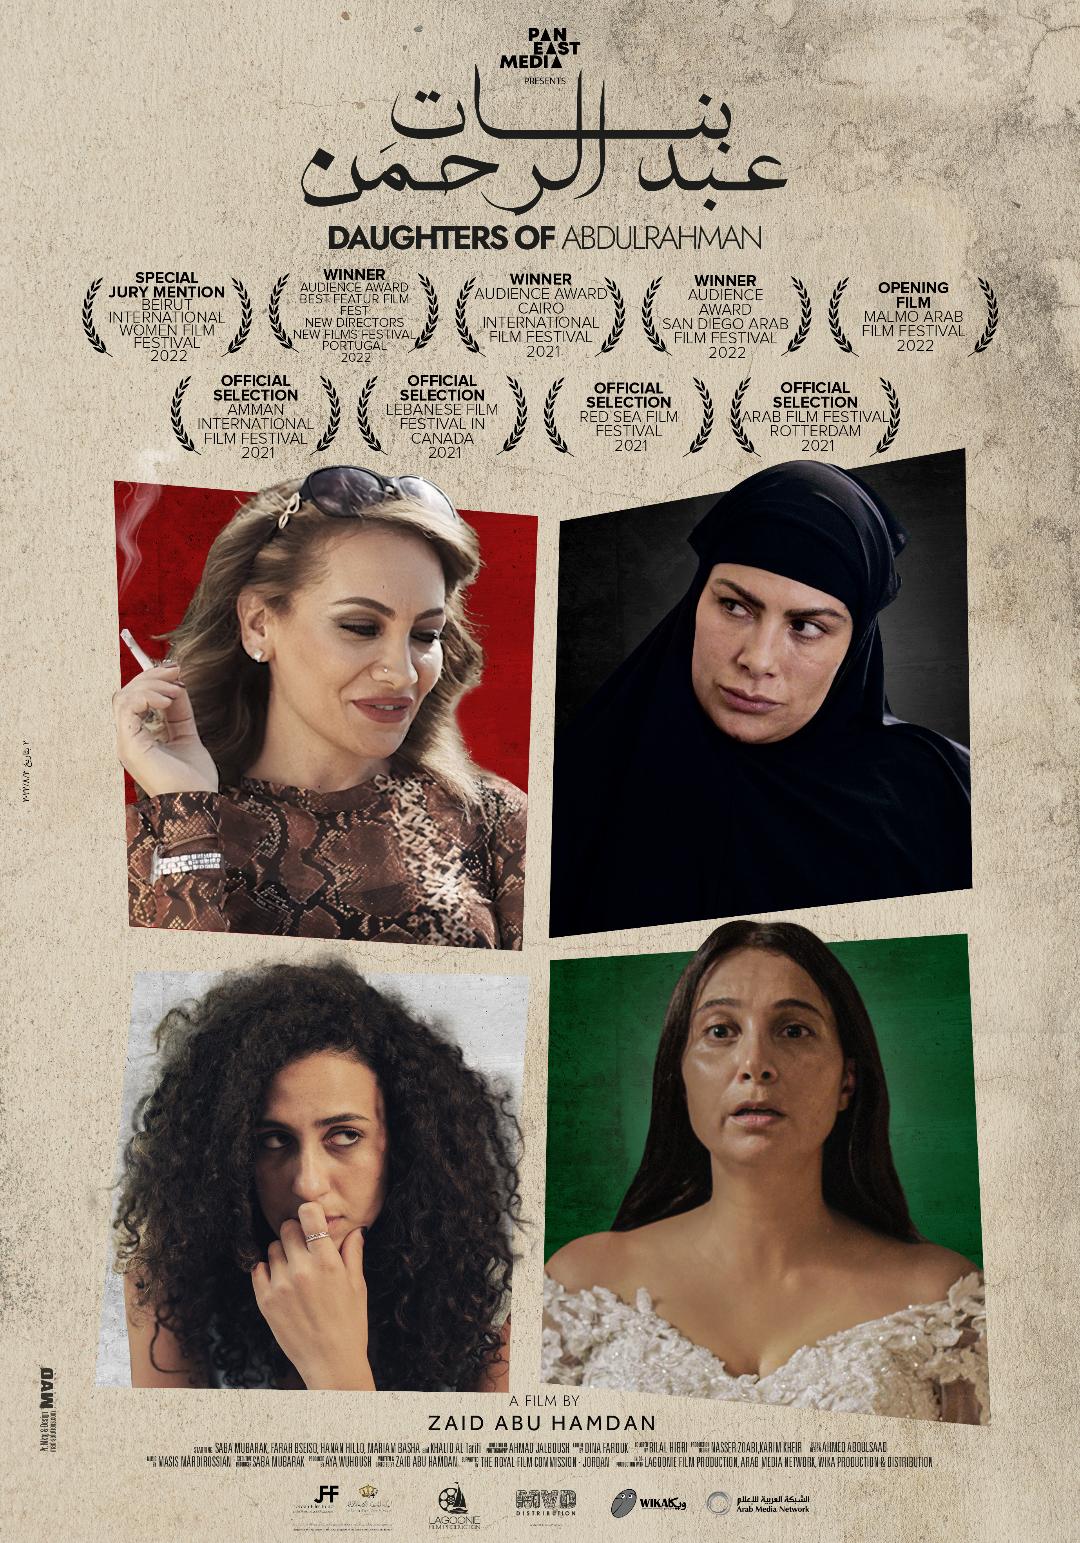 ملصق الفيلم الروائي بنات عبد الرحمن للمخرج زيد أبو حمدان (الأمة برس)